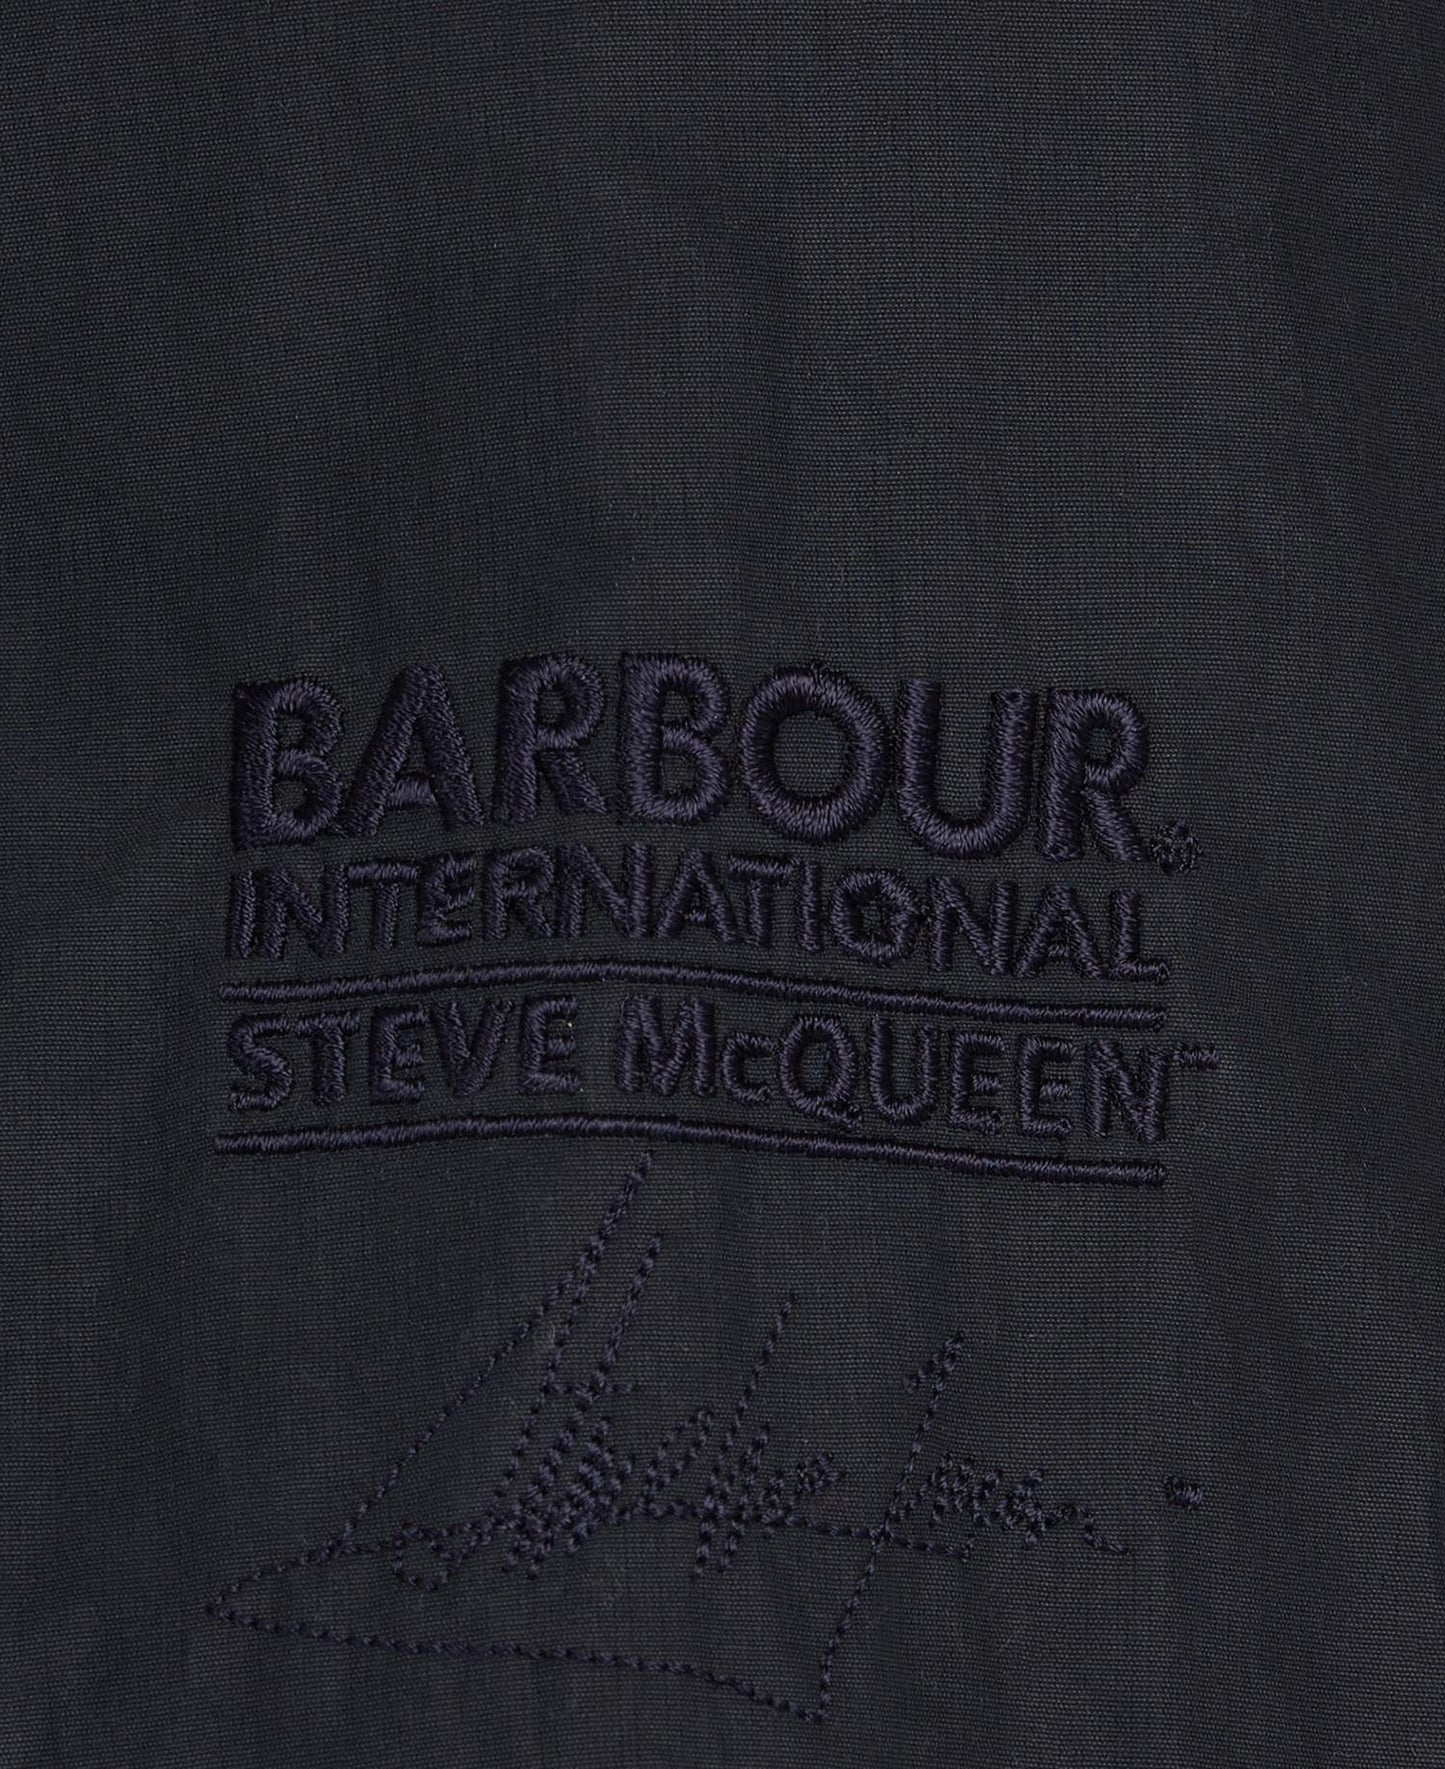 Barbour International B.Intl Steve McQueen™ Rectifier Harrington Jacket
Giubbino uomo